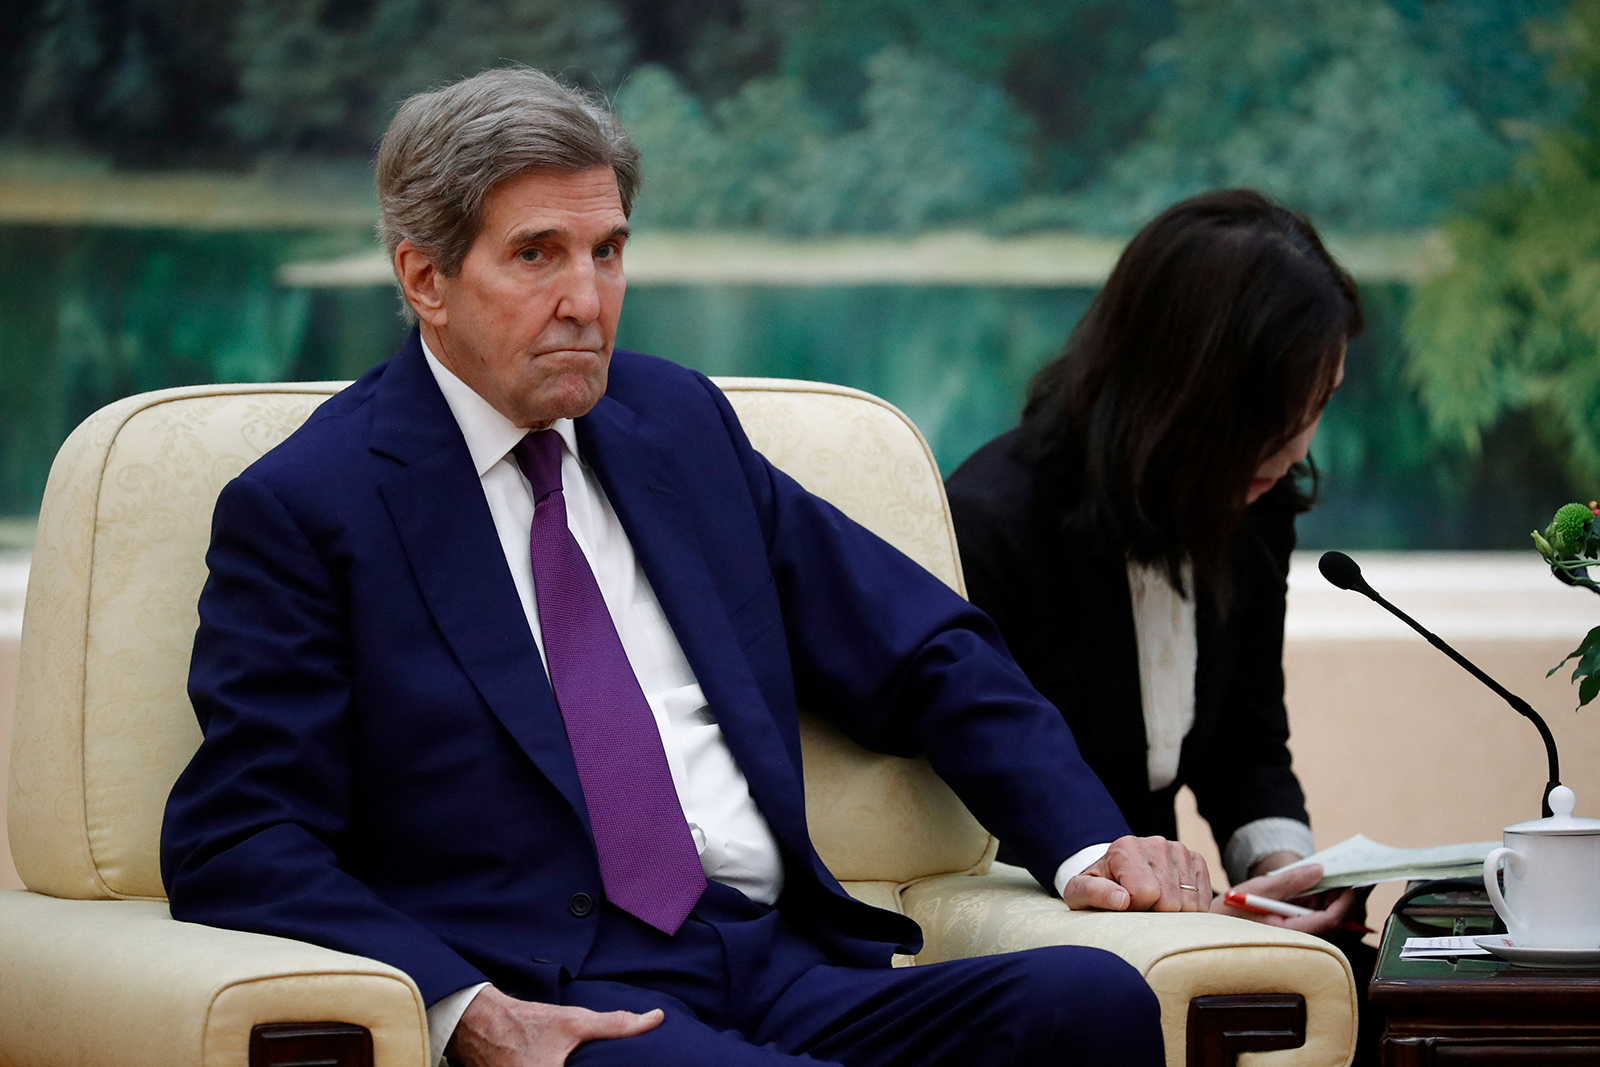 John Kerry attends a meeting in Beijing on July 18.